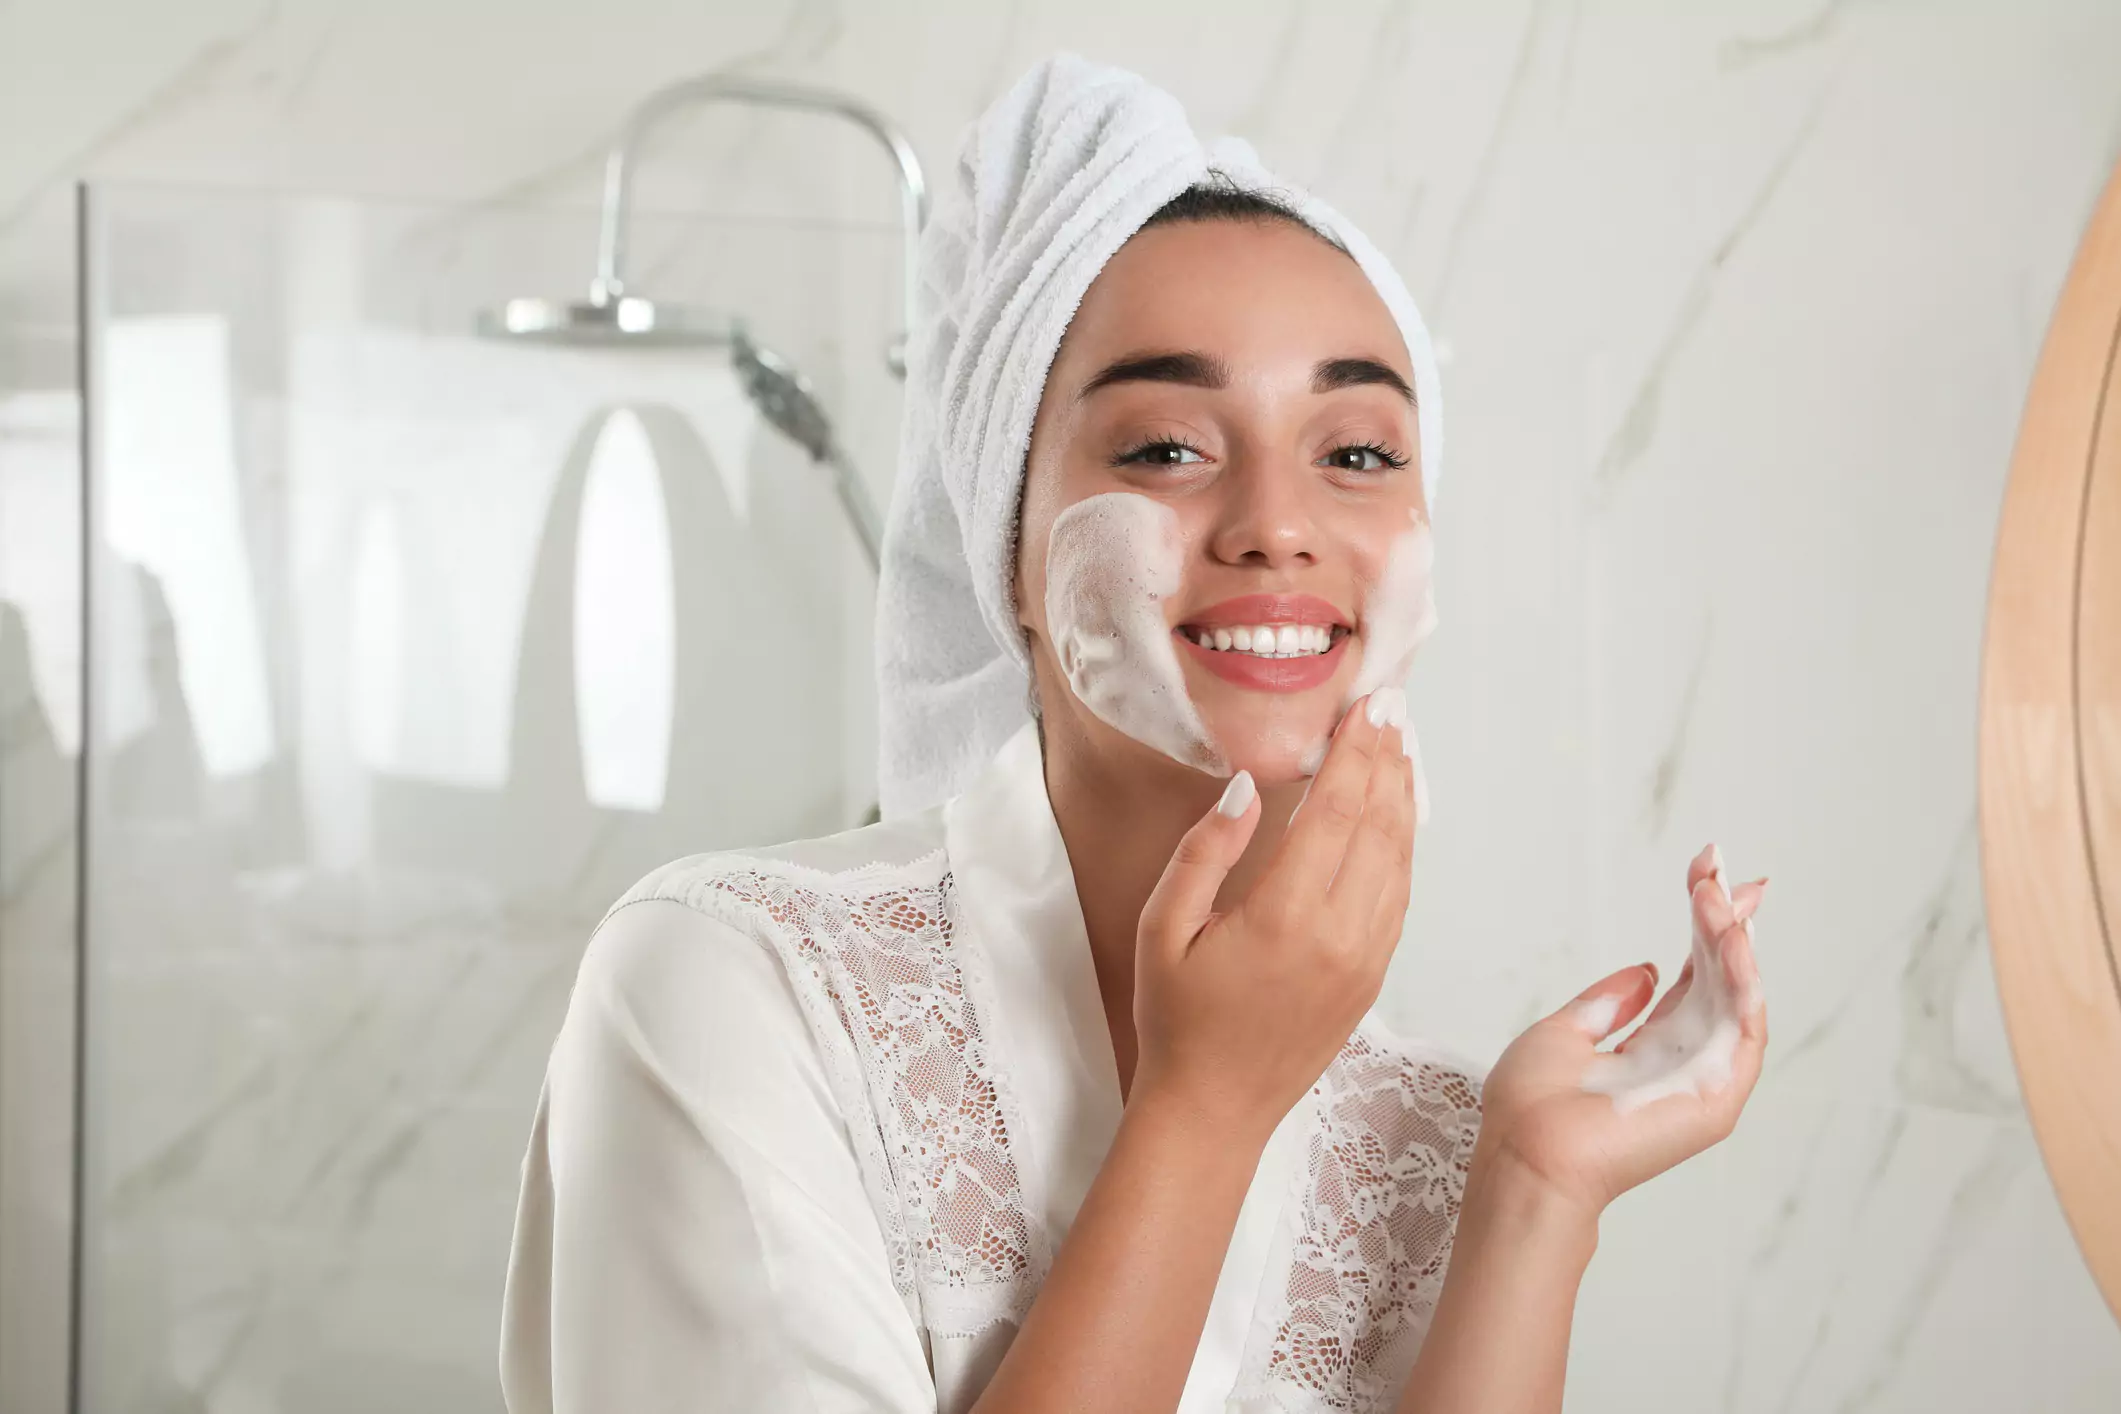 Mujer joven que aplica espuma limpiadora para cuidado de la piel